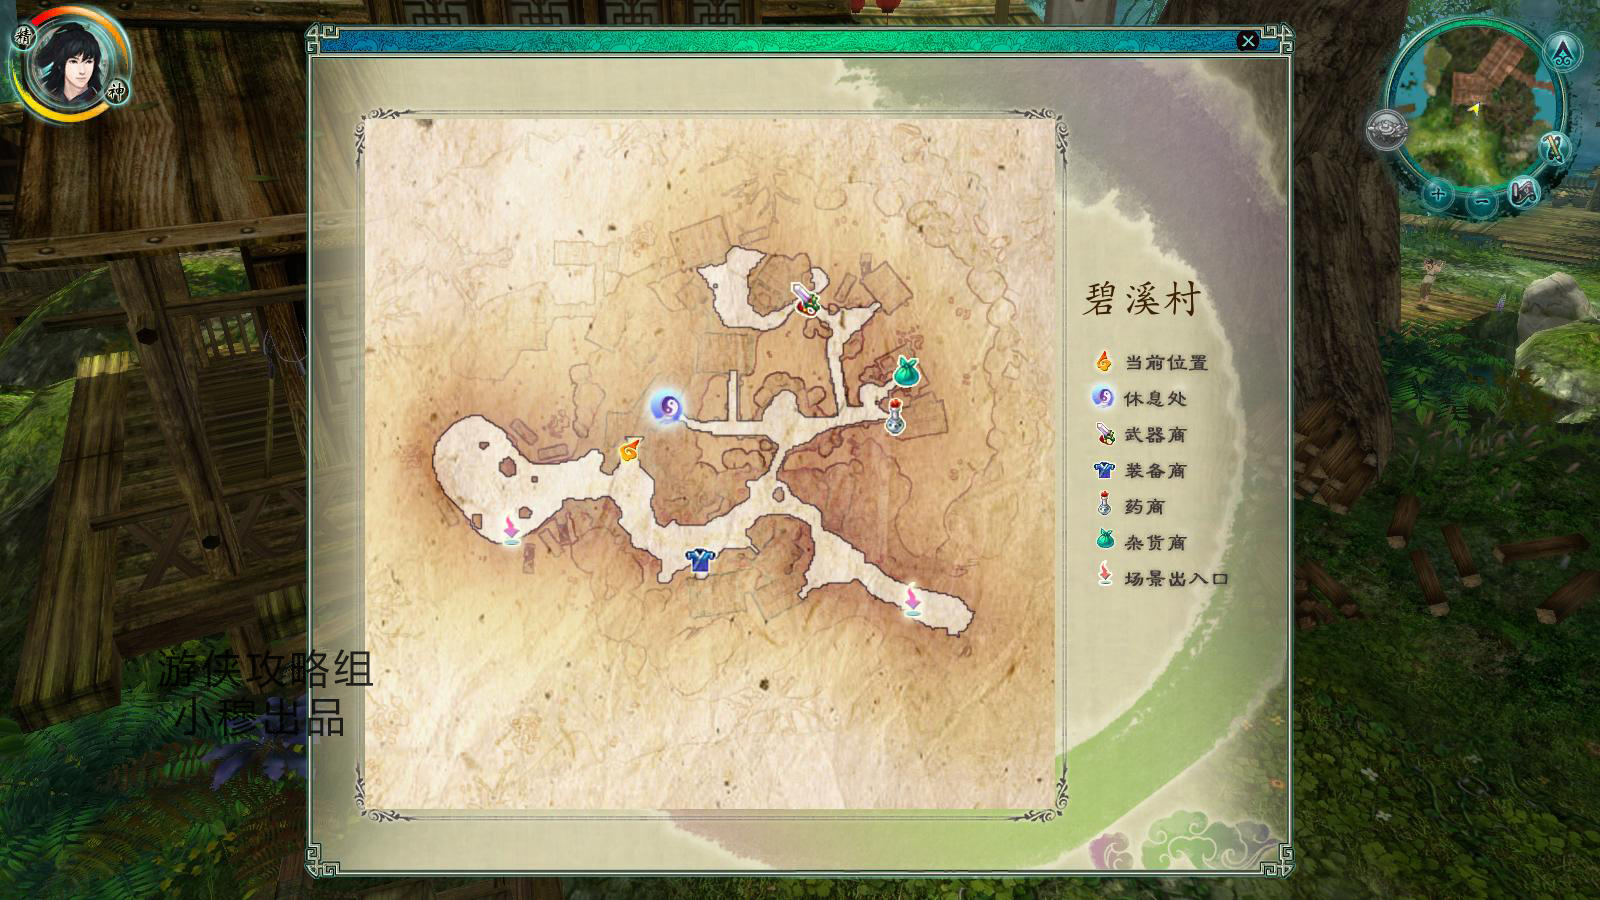 《仙剑98柔情篇》迷宫地图 – 仙剑奇侠传英雄网